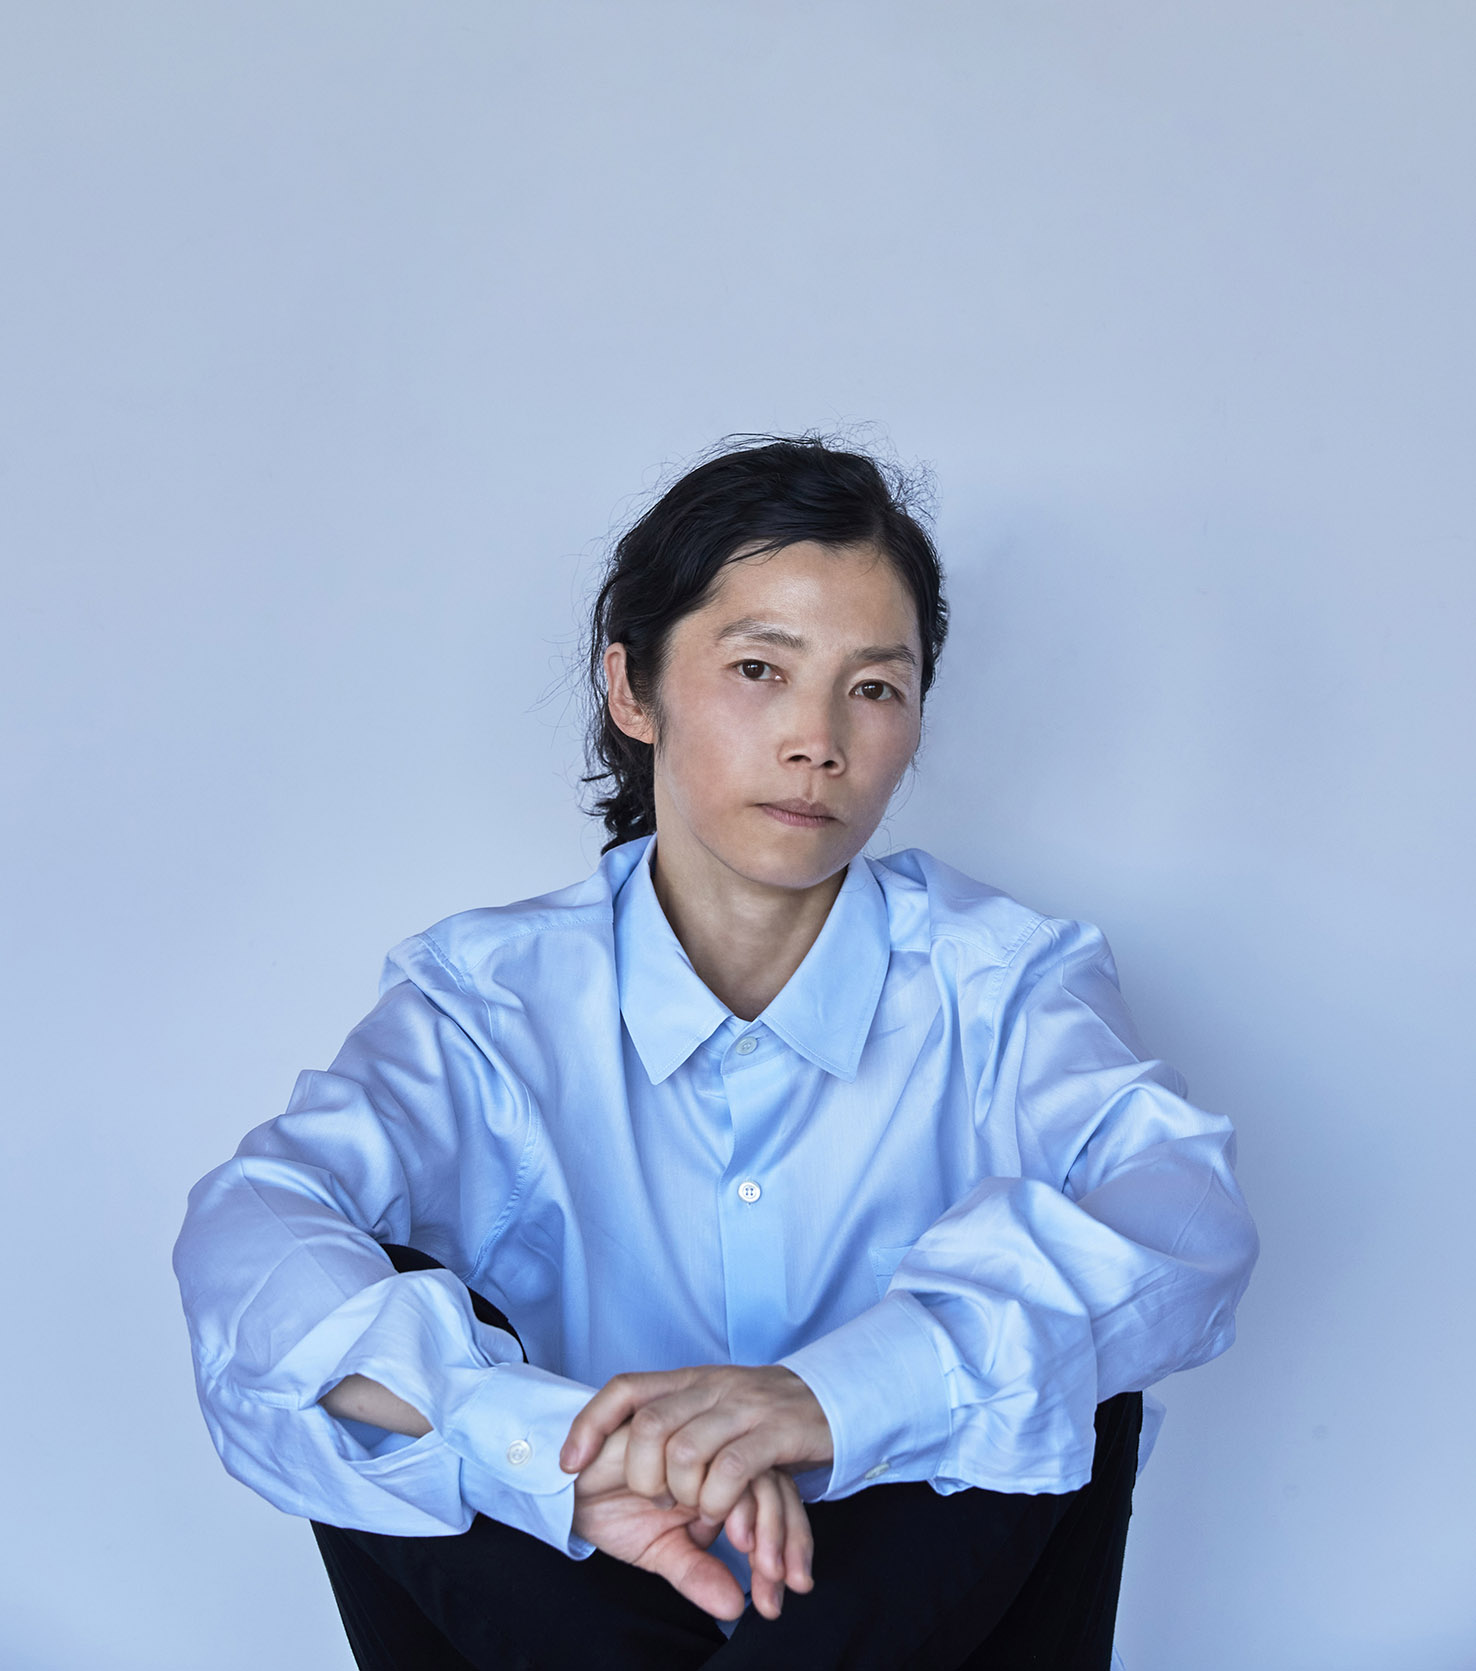 Konstnären Koo Jeong A sitter framför en ljusblå vägg i en nlå skjorta.